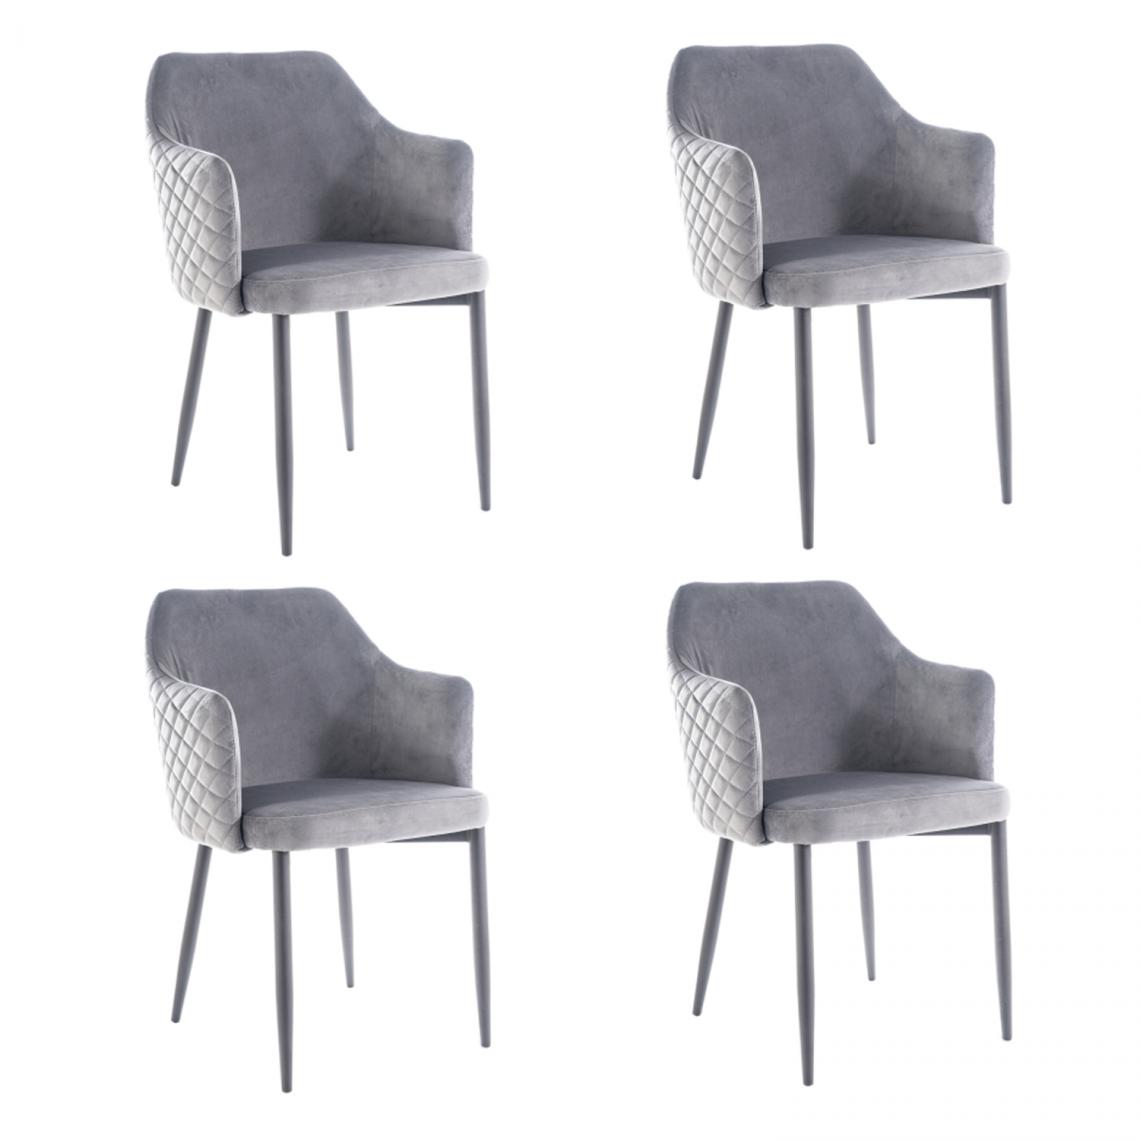 Hucoco - ASTOP - Lot de 4 chaise style glamour - 84x46x46 cm - Revêtement en tissu velouté - Chaise élégante - Gris - Chaises